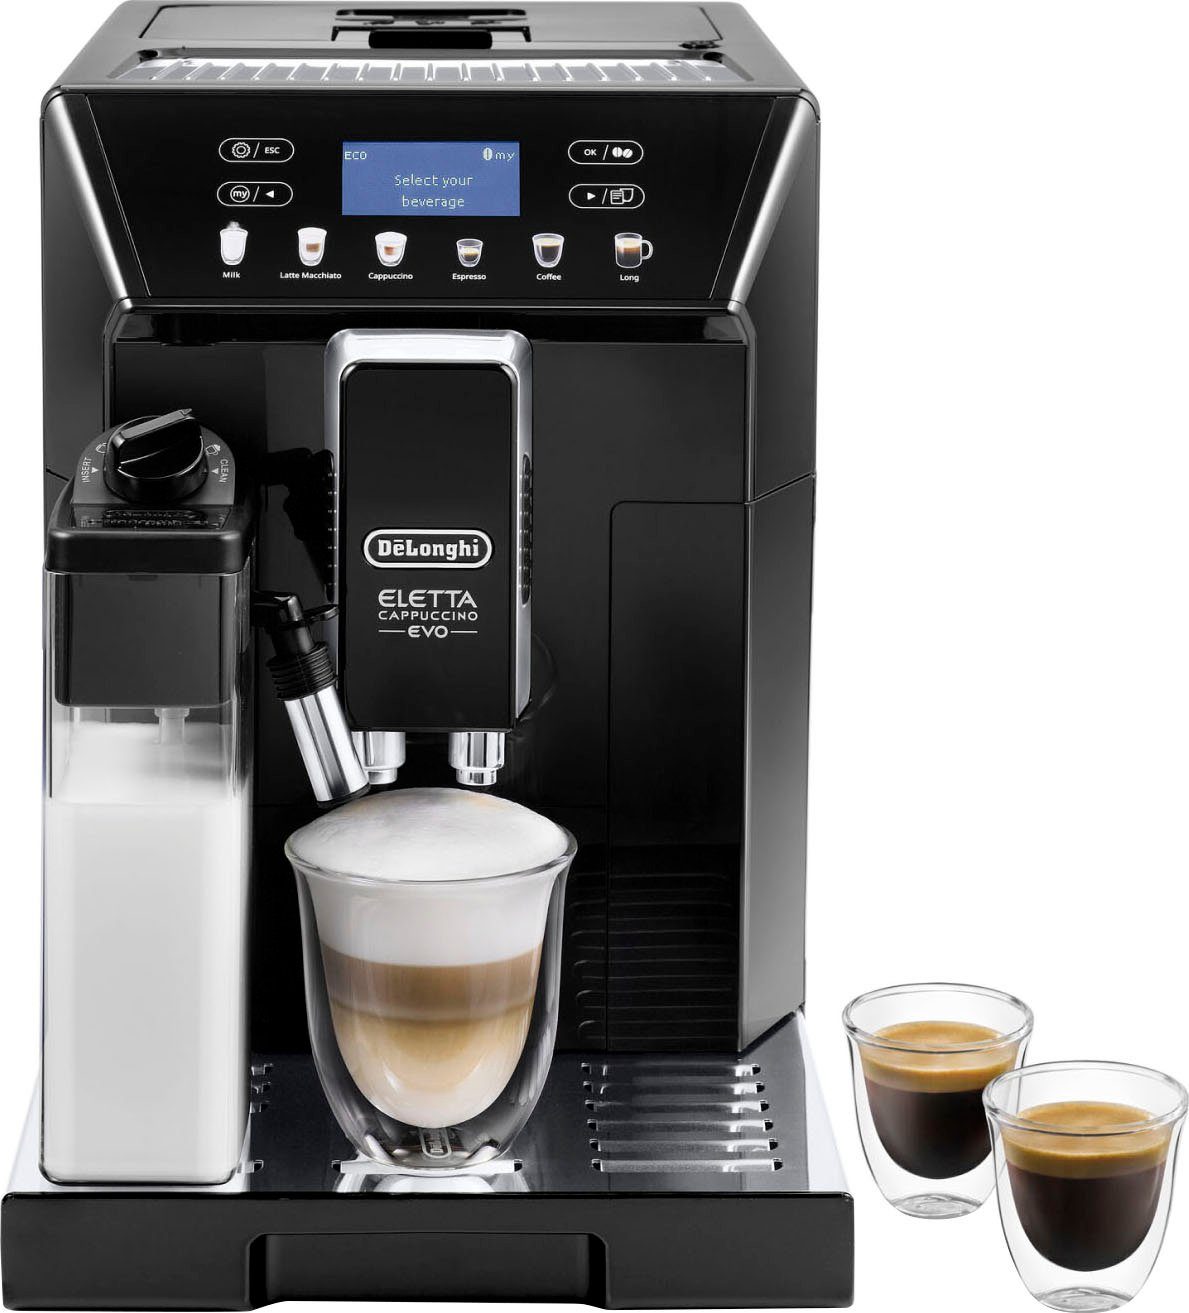 De'Longhi Kaffeevollautomat ECAM 46.860.B Eletta € inkl. von Evo, schwarz, Wert UVP 31,99 im Pflegeset